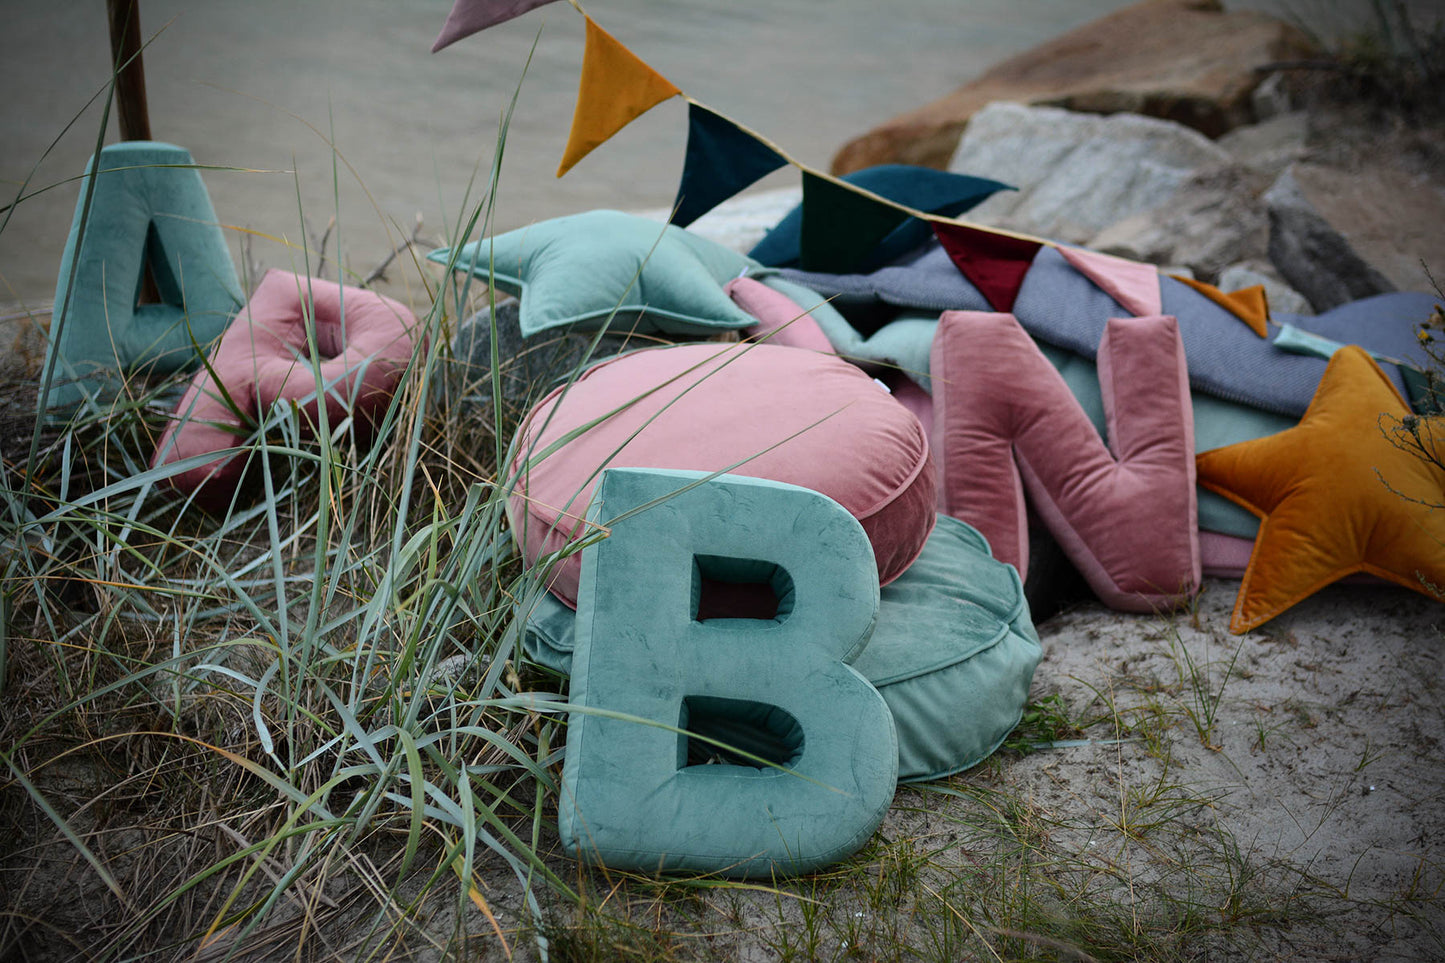 velvet letter pillow b mint on sand waiting as birthday gift for kid by bettys home